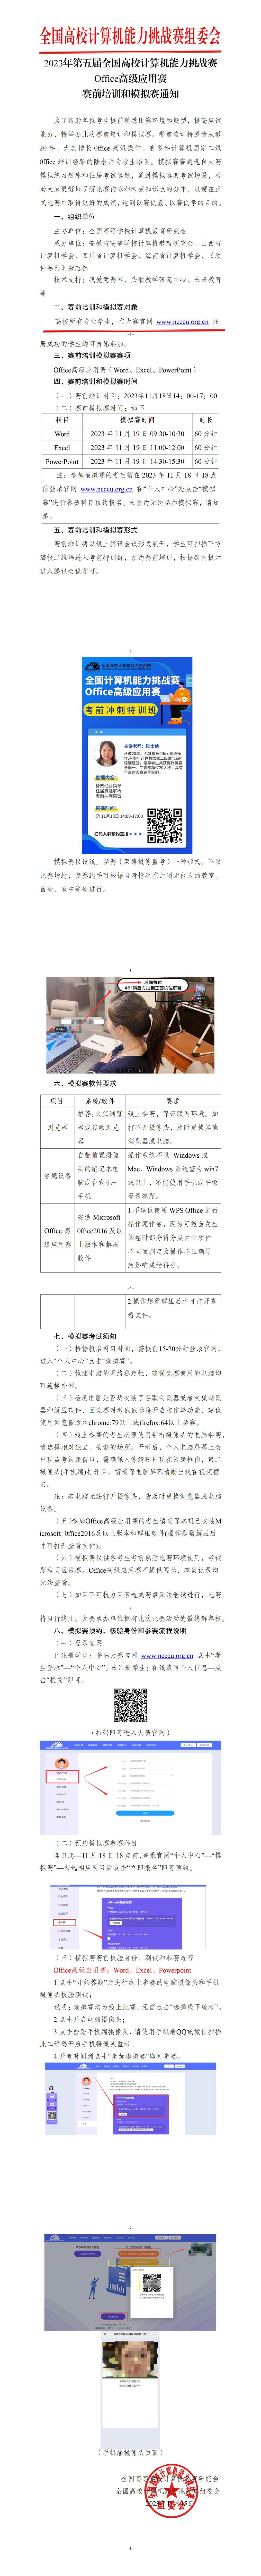 11.15【考前模拟赛通知】office高级应用赛_01(2).png